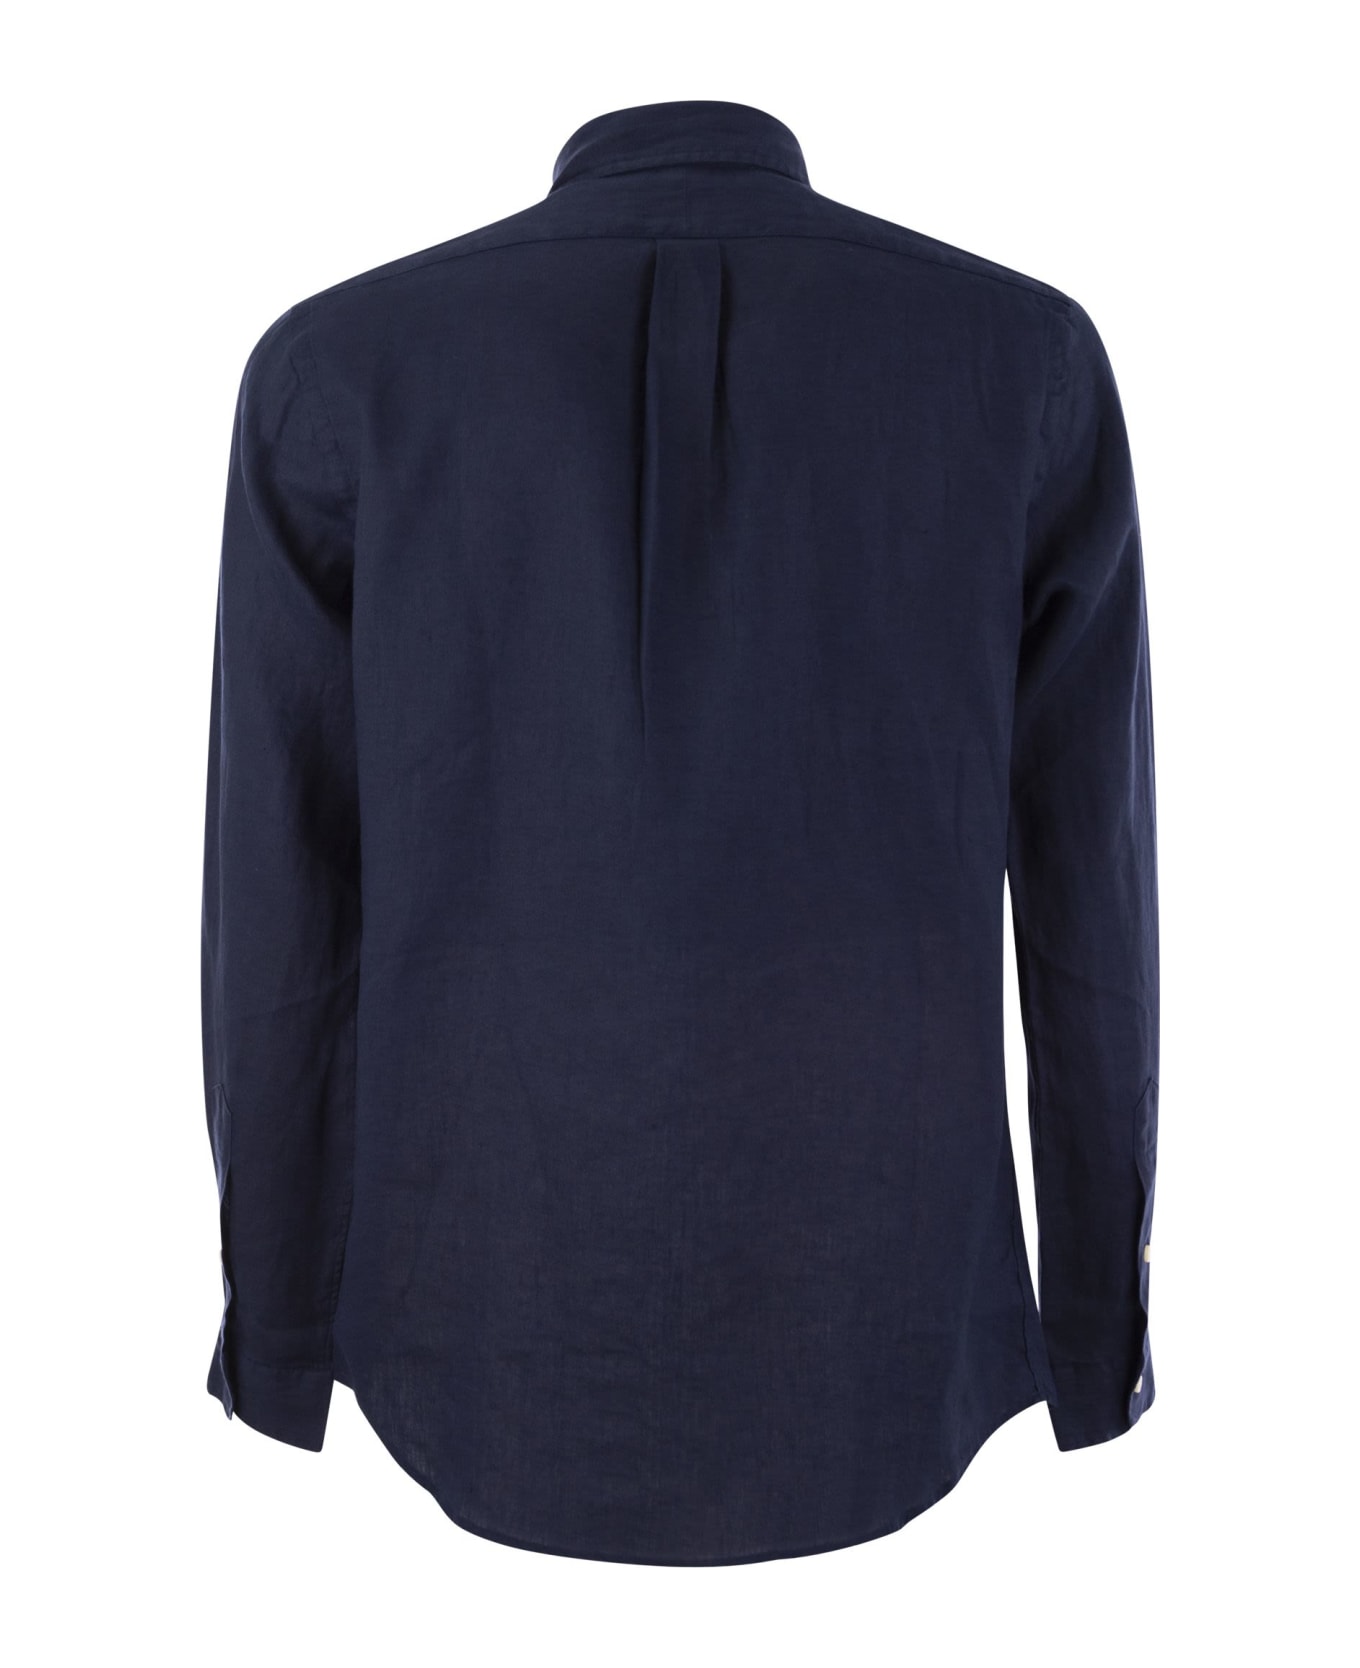 Polo Ralph Lauren Classic Long Sleeve Shirt - Navy Blue